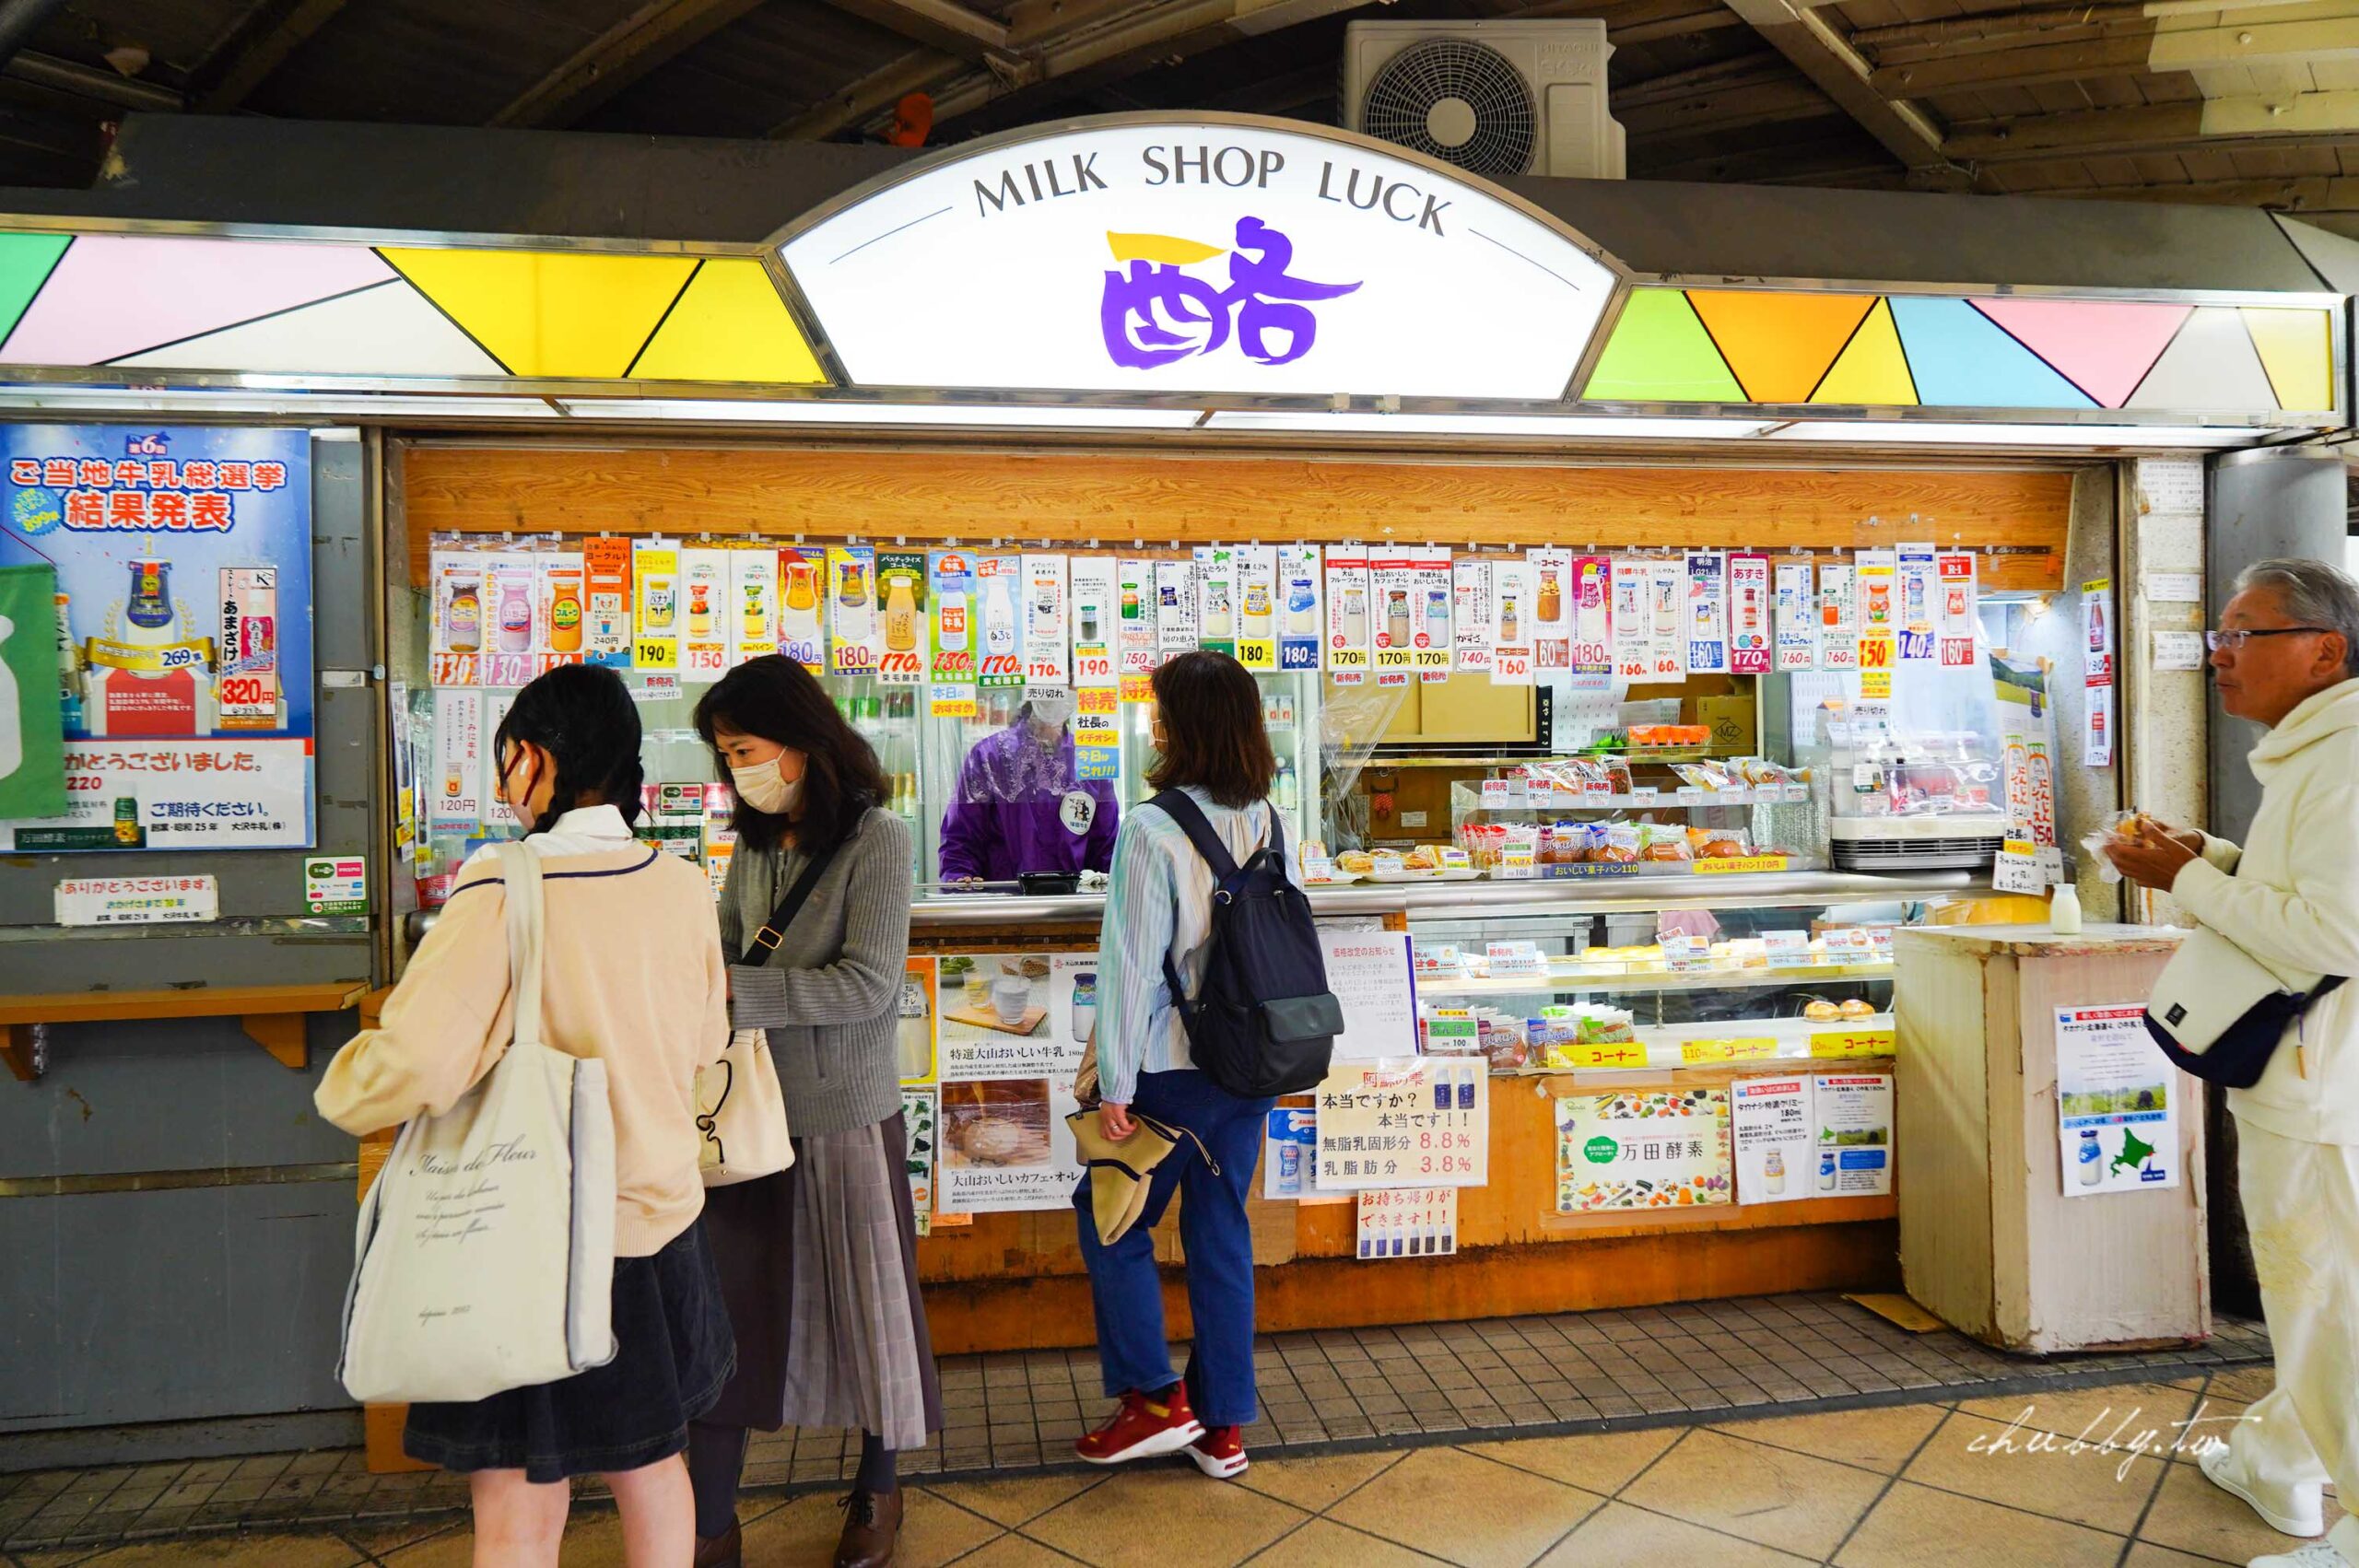 延伸閱讀：【東京美食】月台上的牛奶專賣店『酪MILK SHOP LUCK RAKU』 一次享用日本全國知名牛奶